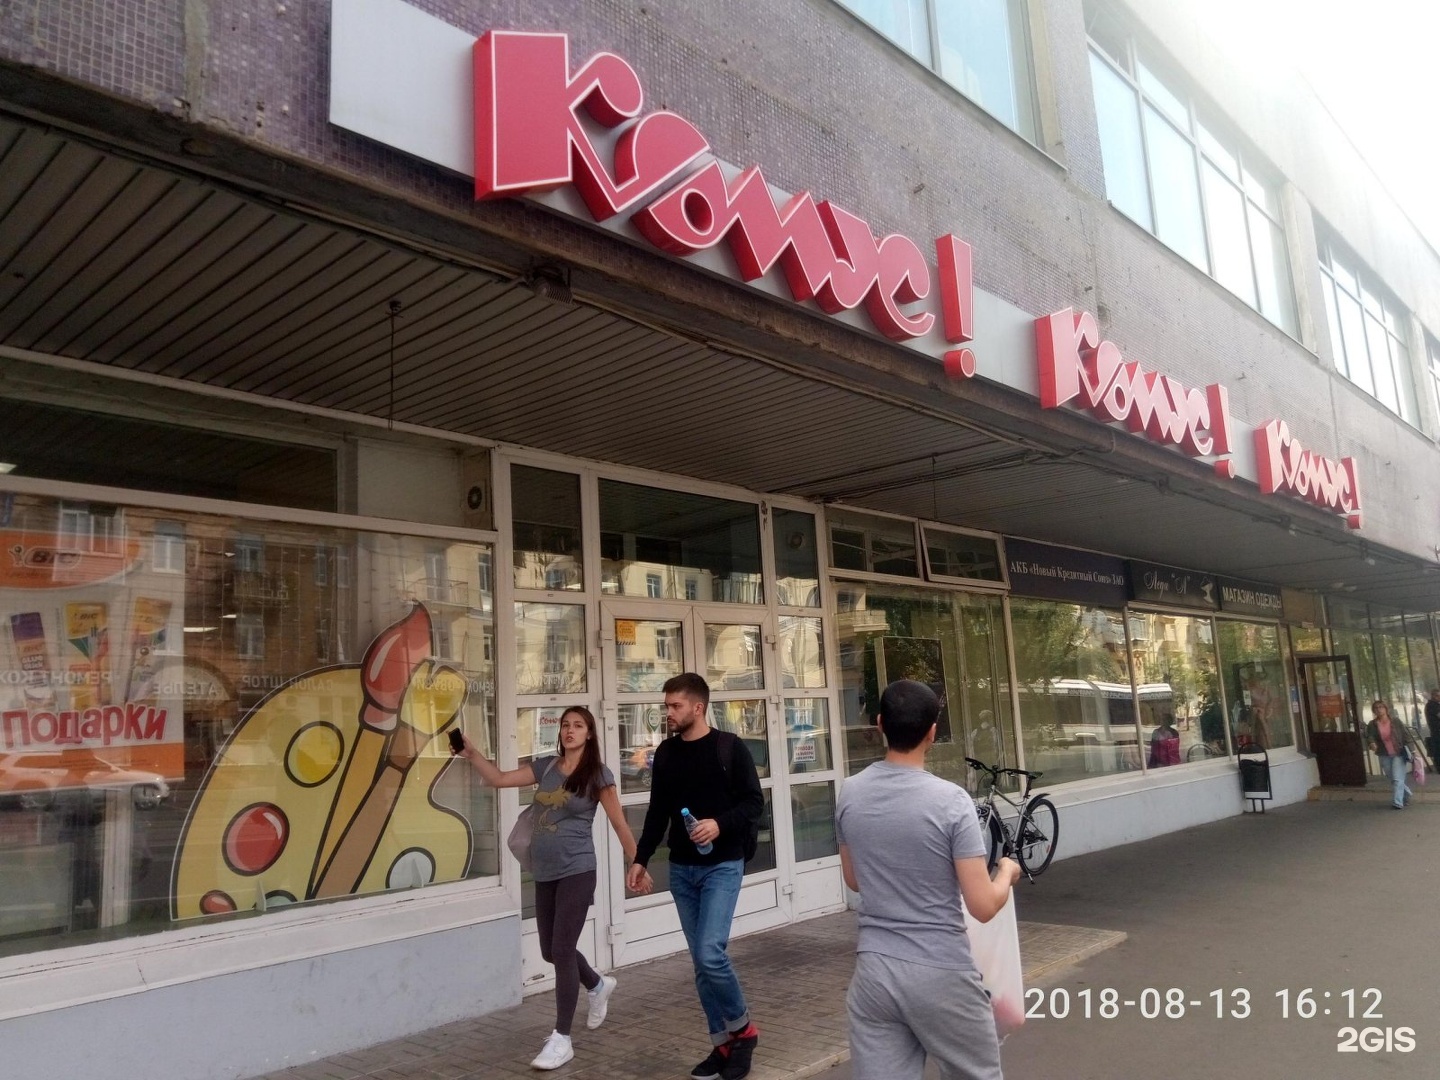 Самый Большой Магазин Комус В Москве